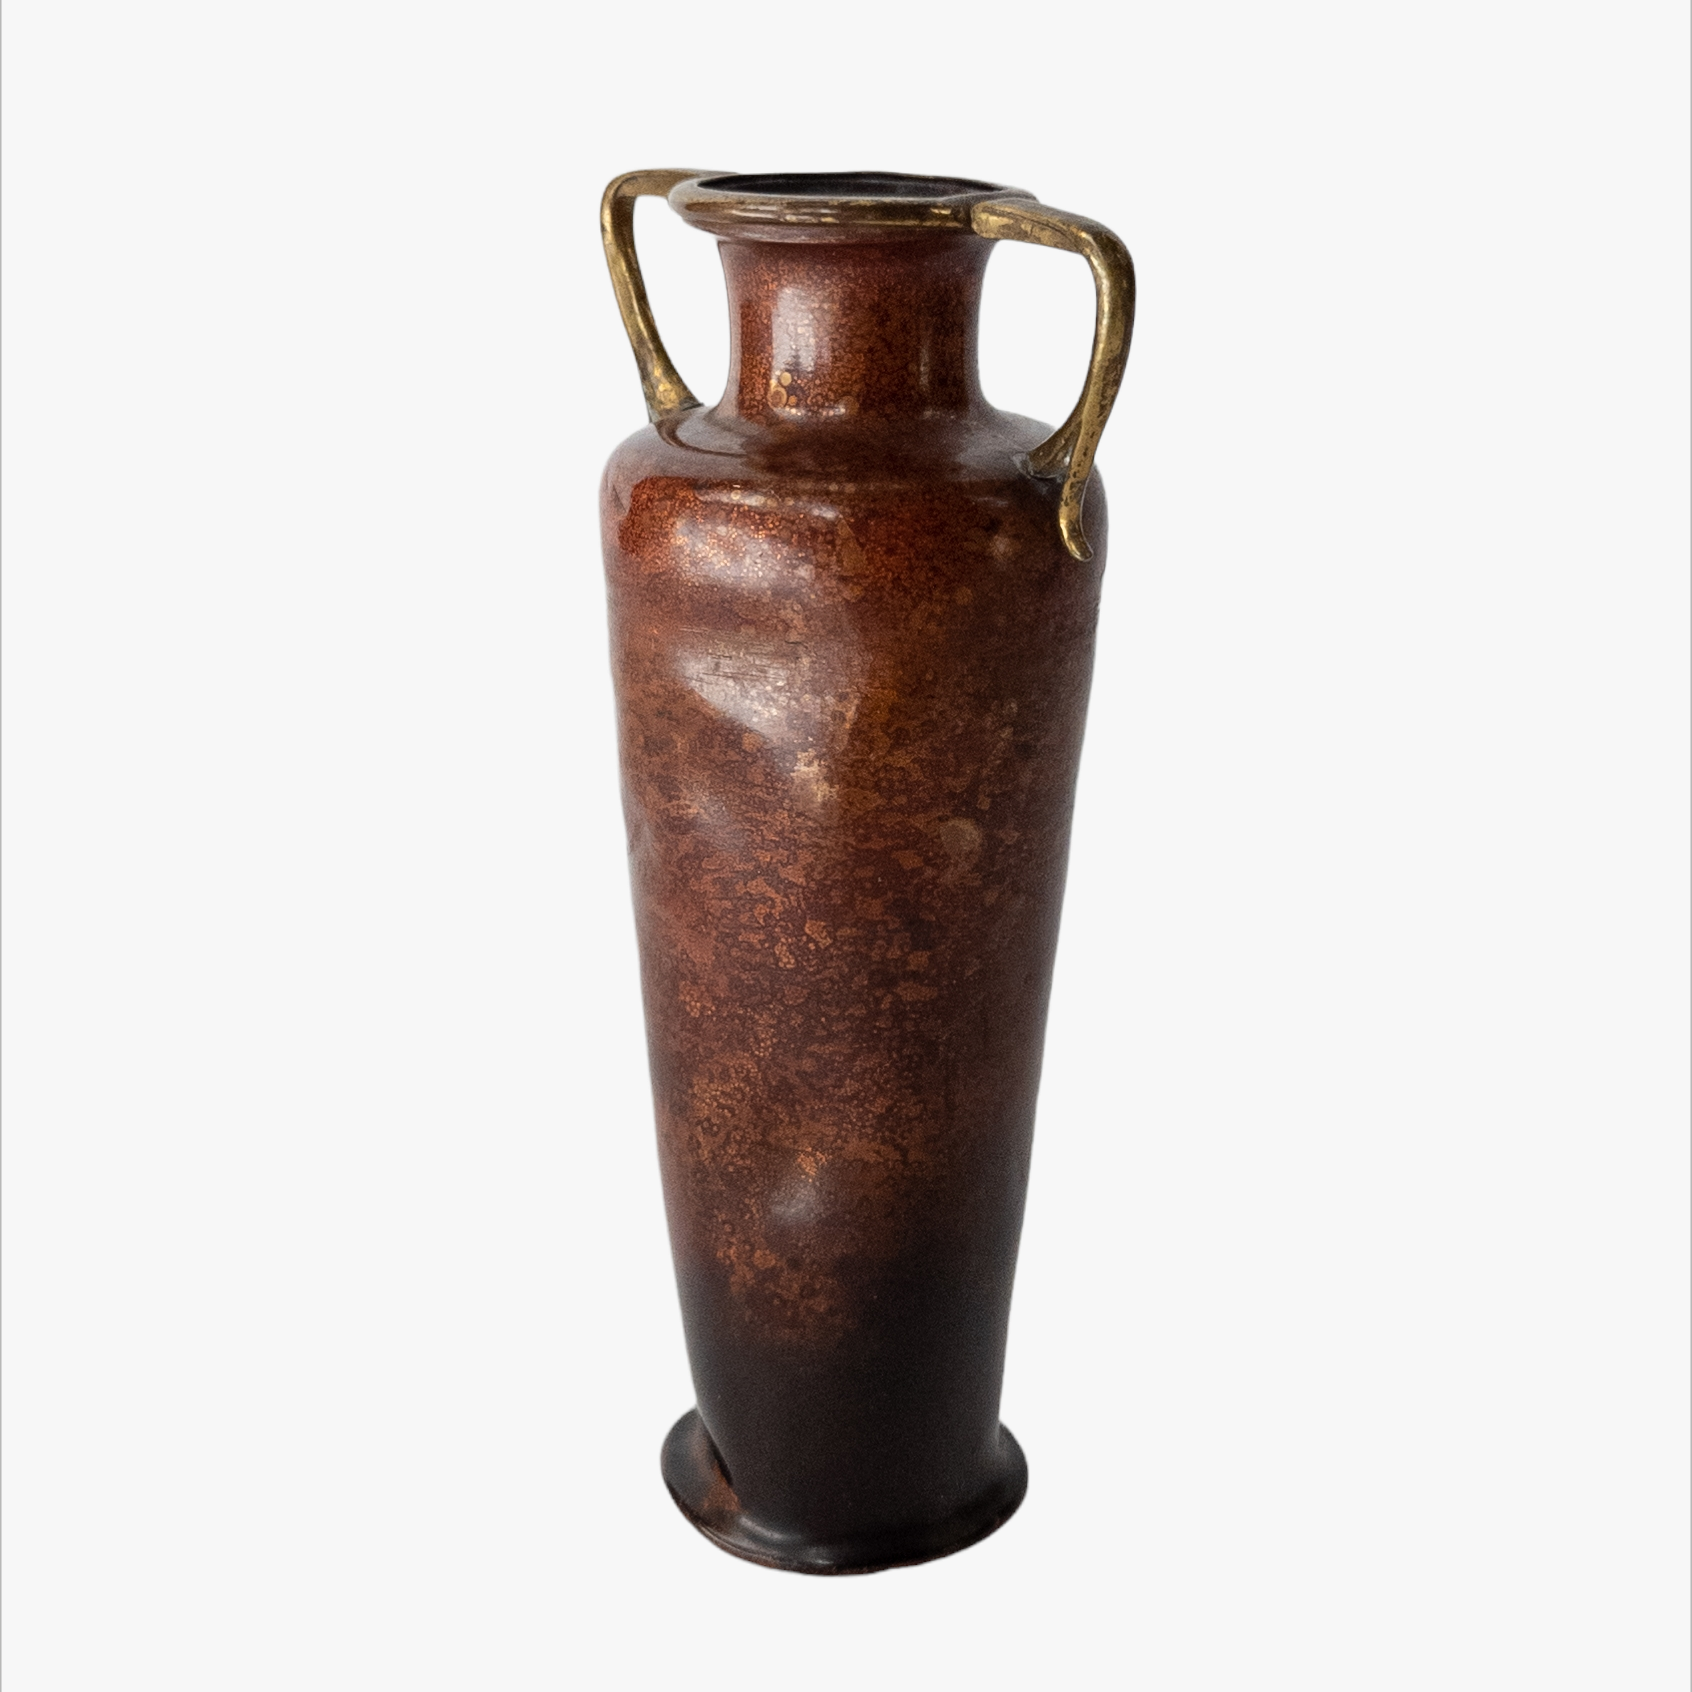 Antique Art Nouveau Enameled Copper Urn